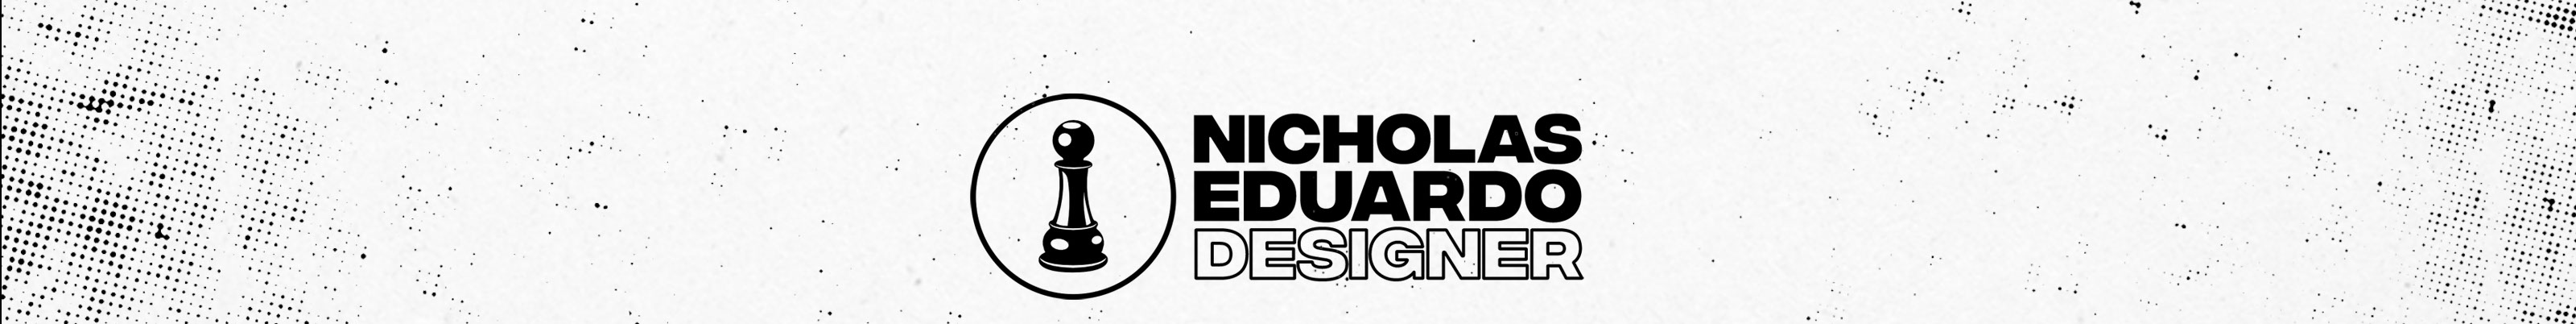 Nicholas Eduardo's profile banner